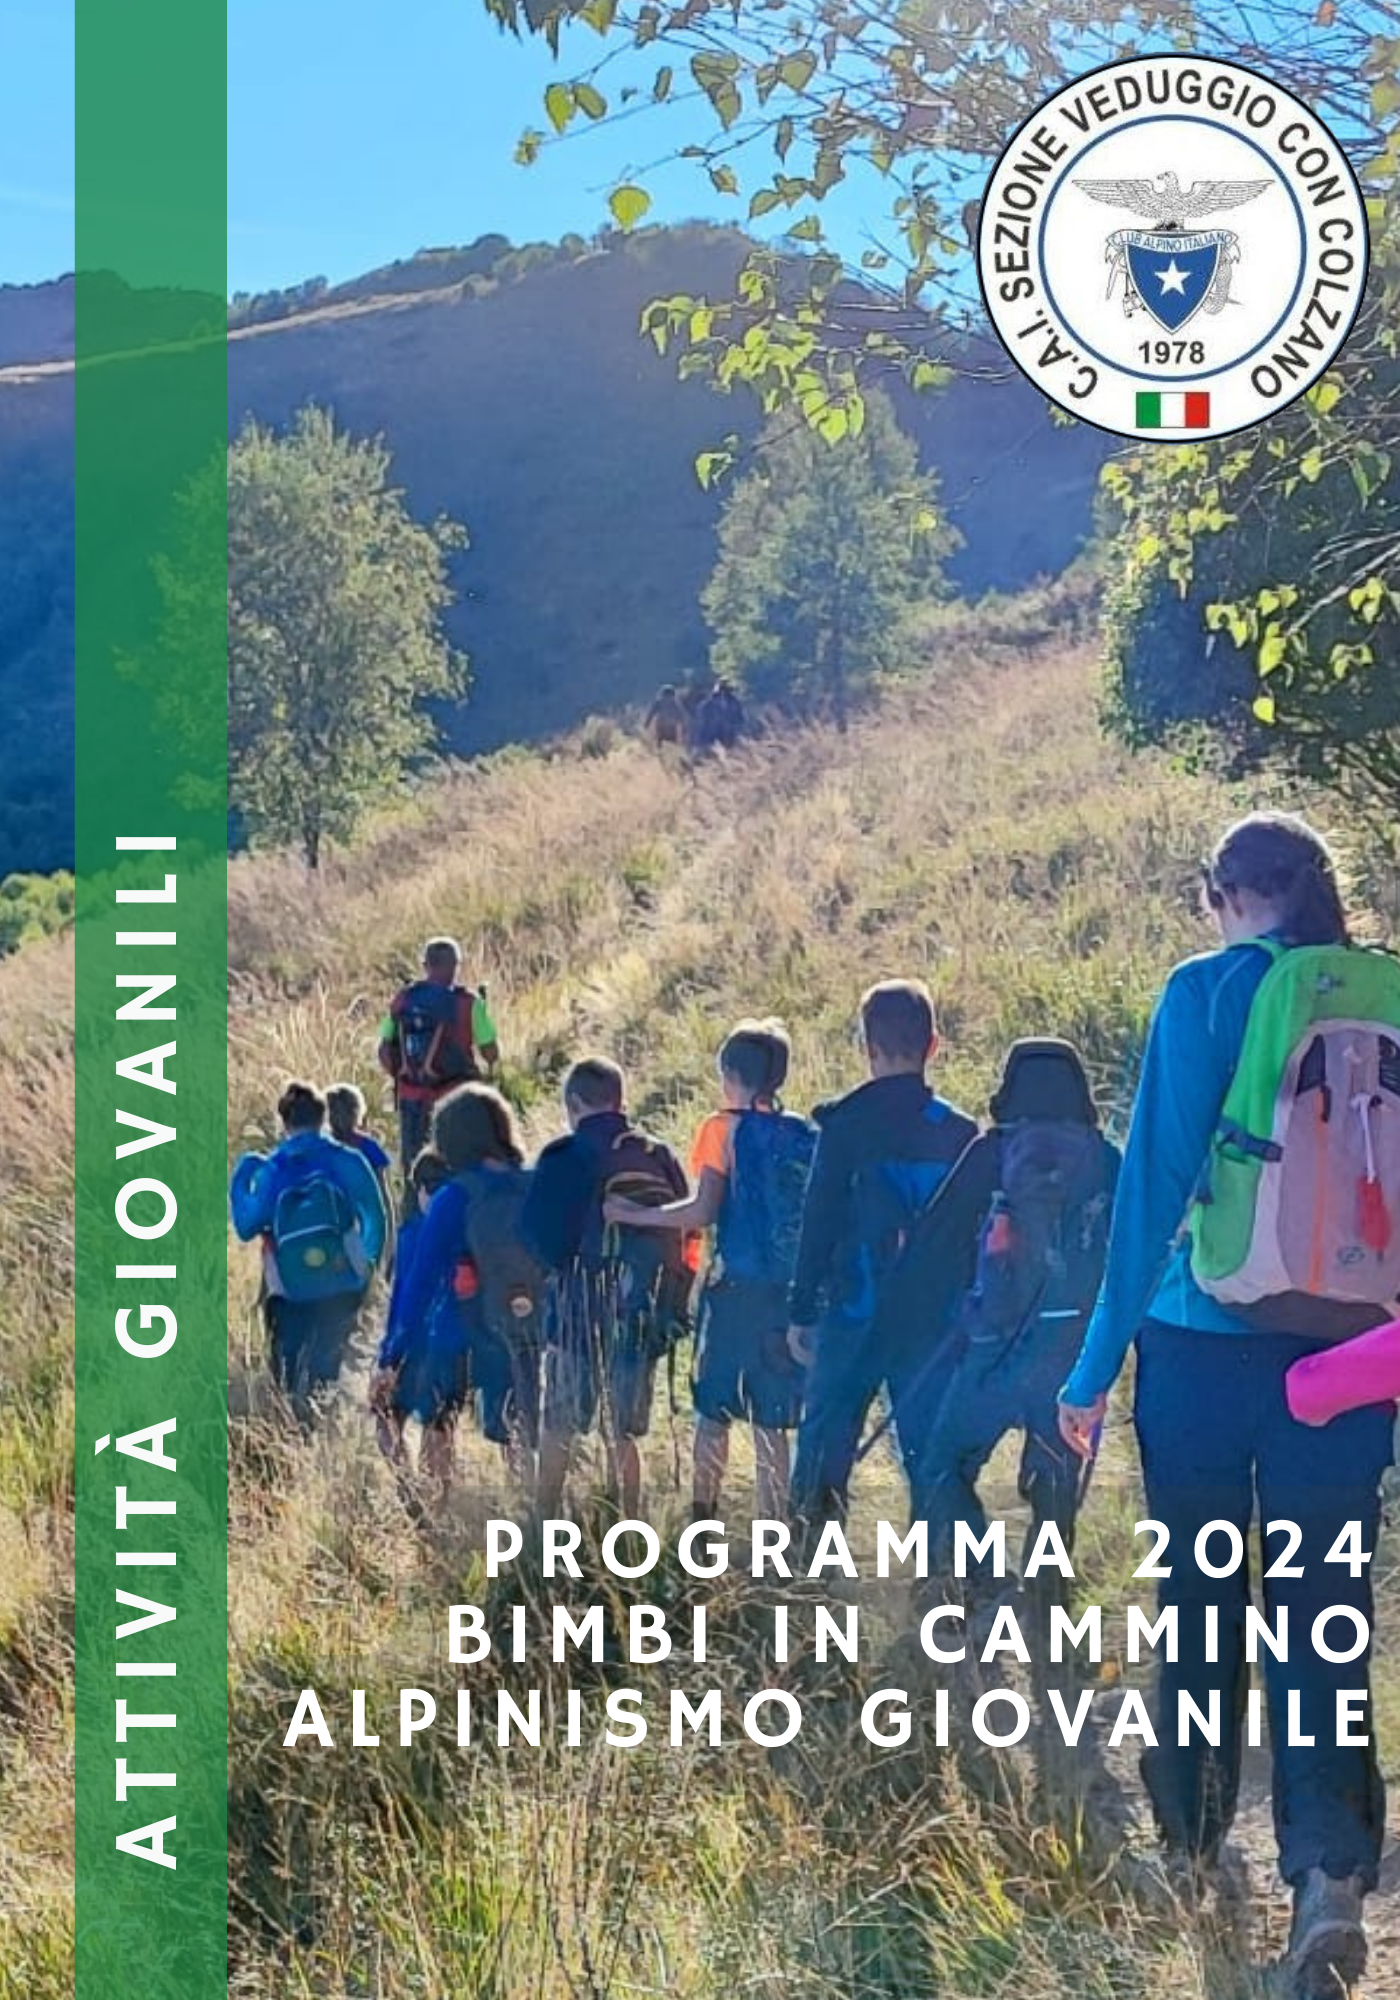 Programma attività Alpinismo Giovanile 2024